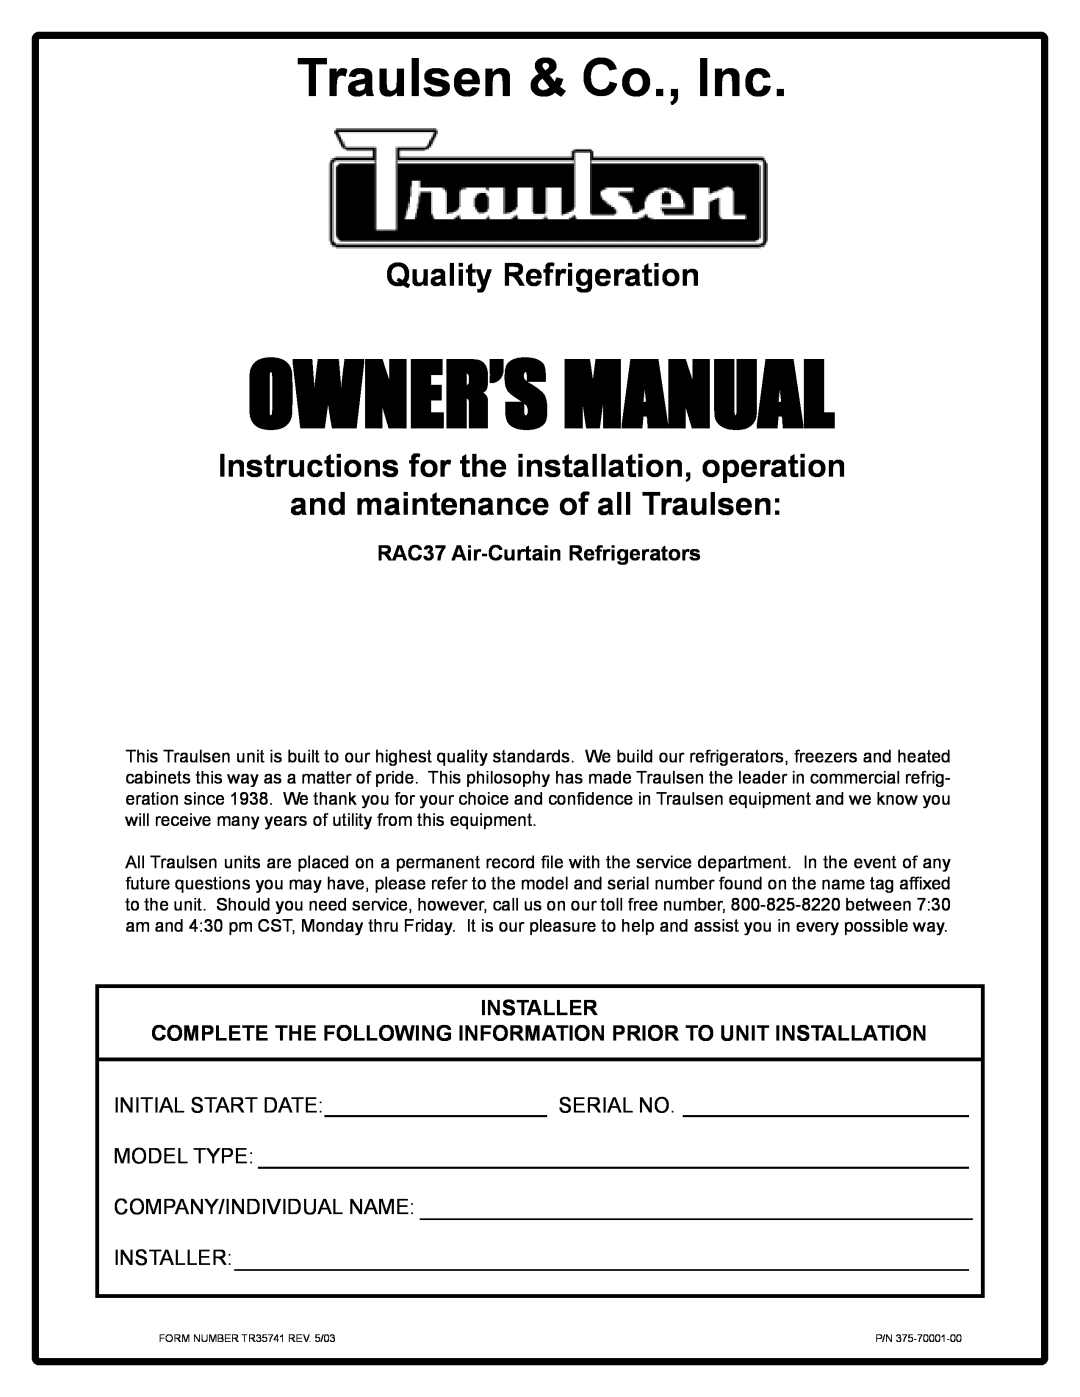 Traulsen RAC3T owner manual RAC37 Air-CurtainRefrigerators, Installer, Initial Start Date, Serial No, Owner’Smanual 